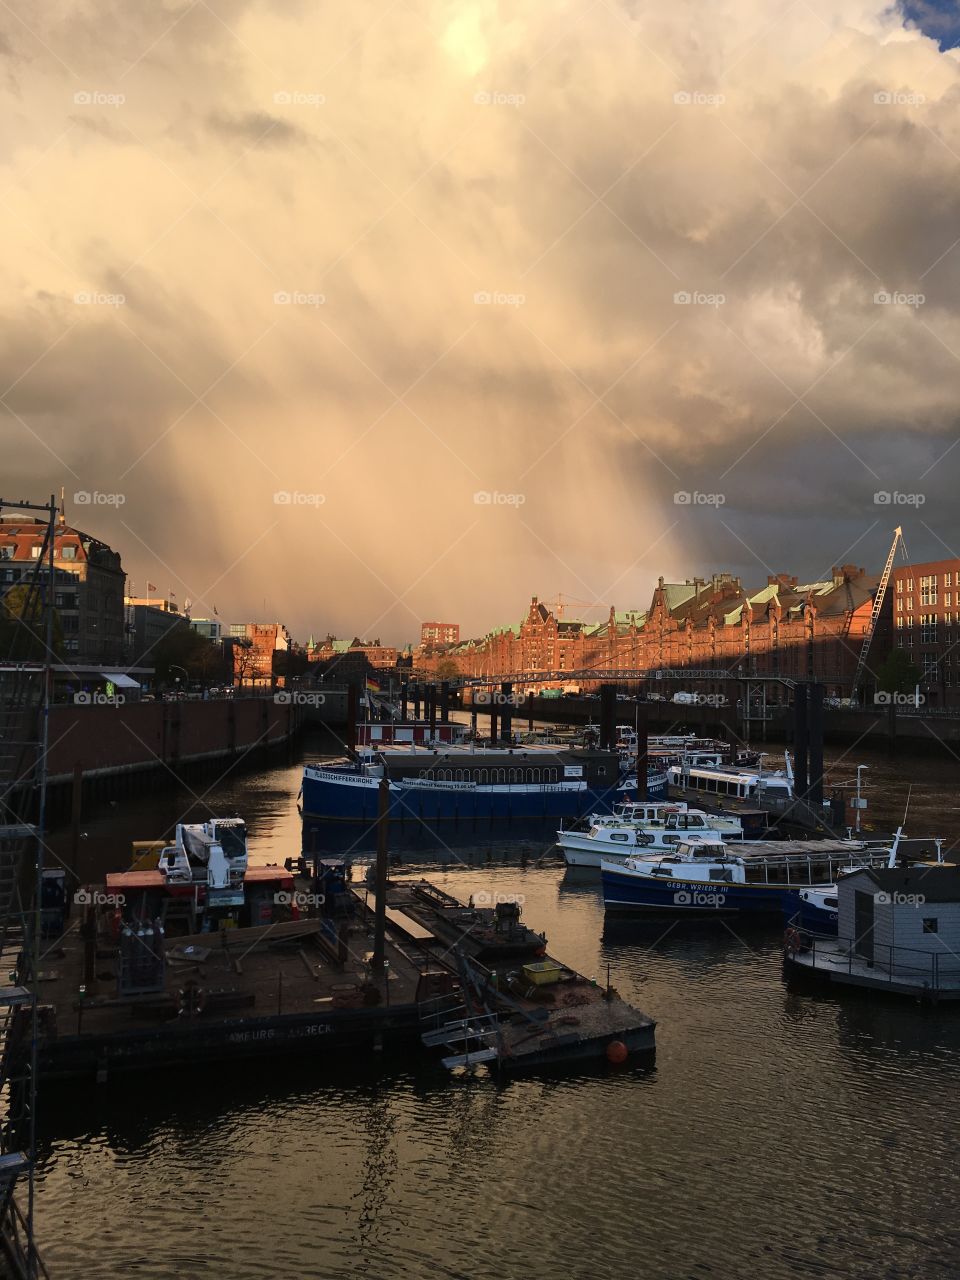 Hamburg‘s Sunshine.
Hamburg‘s Rain.
Hamburg‘s Love